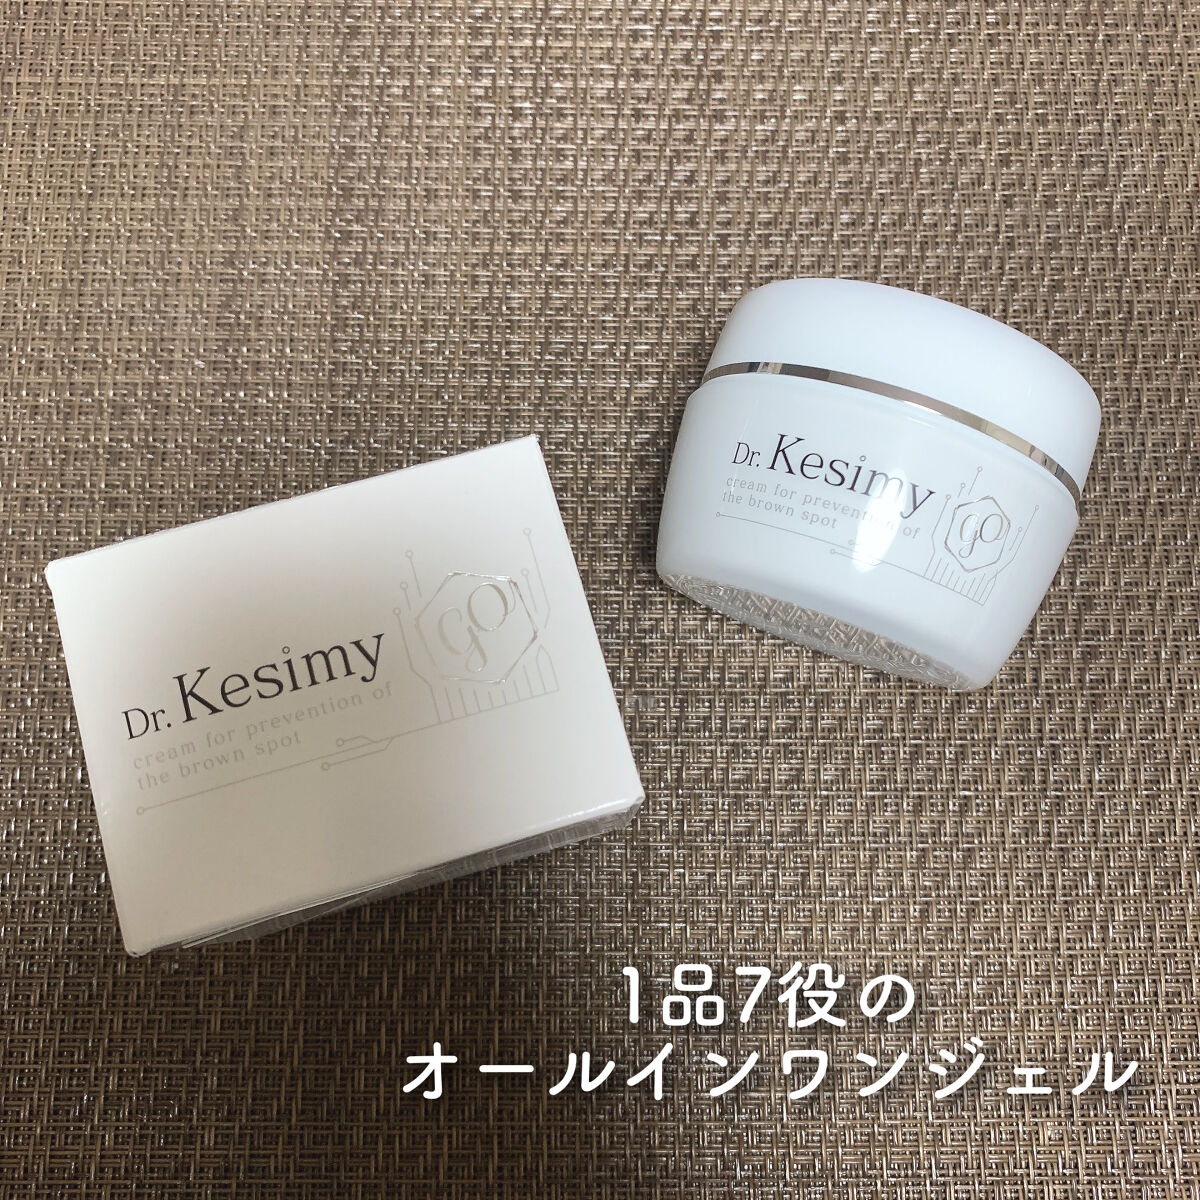 【2 セット】Dr.Kesimy (ドクターケシミー)60g【新品未開封】コスメ/美容